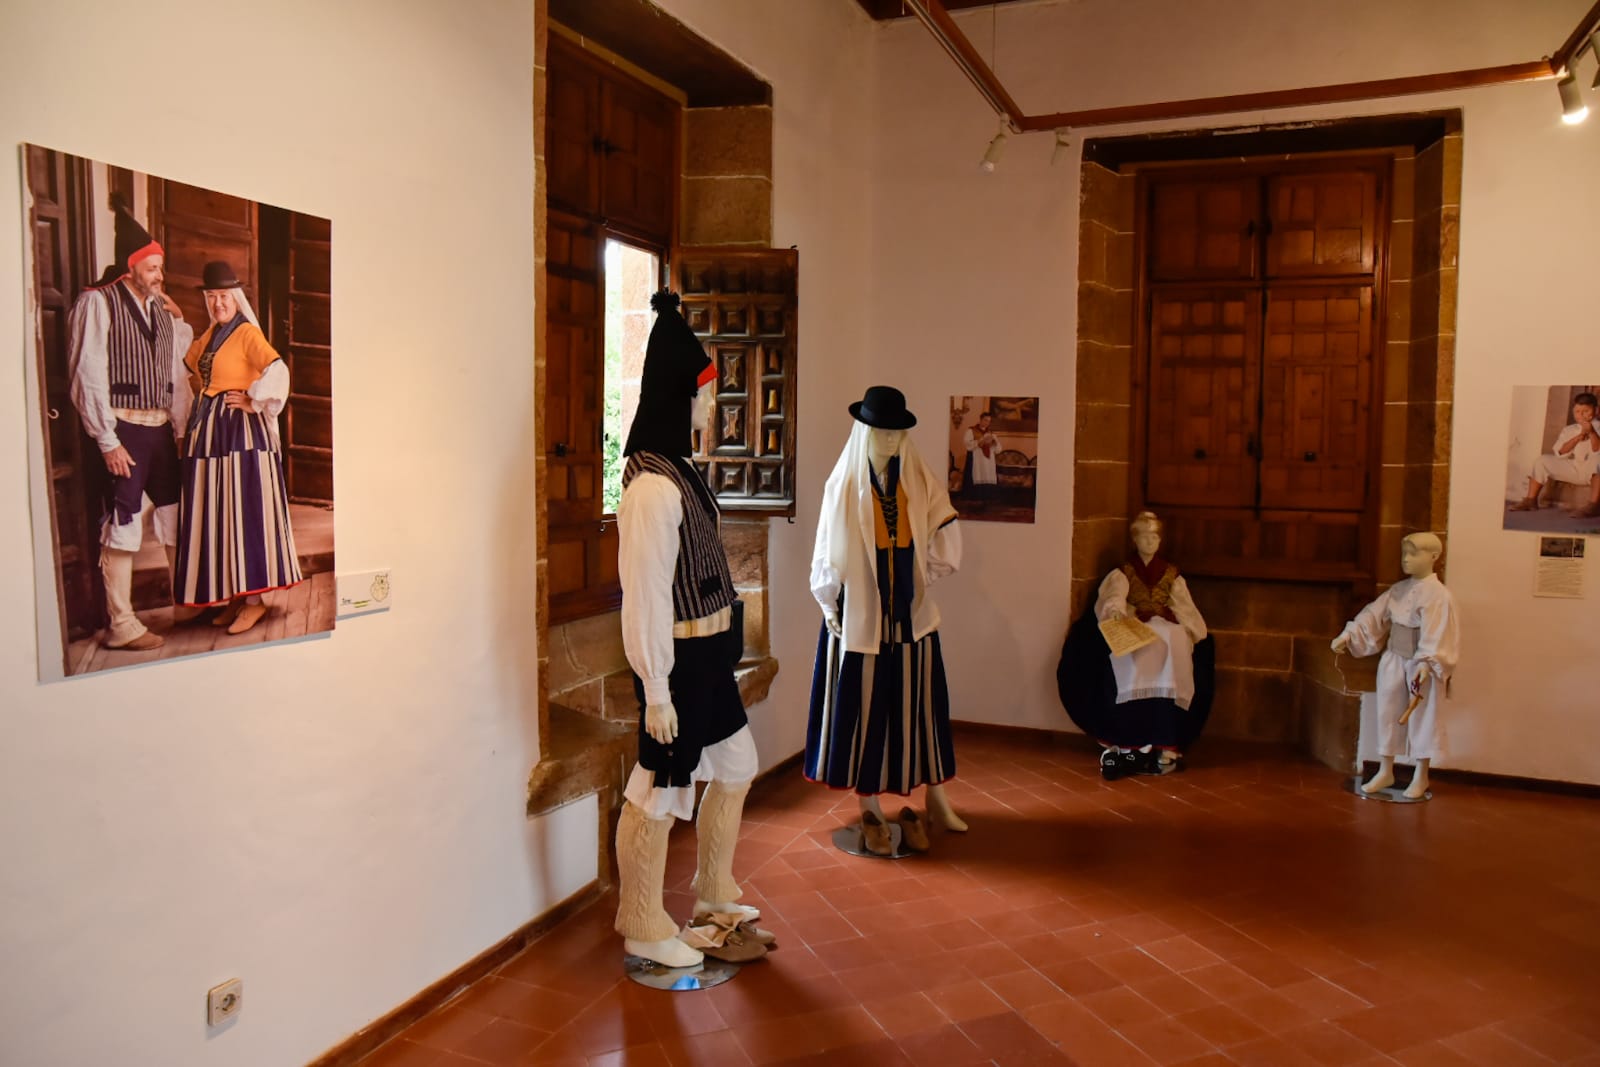 Exposición “Vestimenta tradicional de Gran Canaria a través de sus municipios" Teror. Gran Canaria